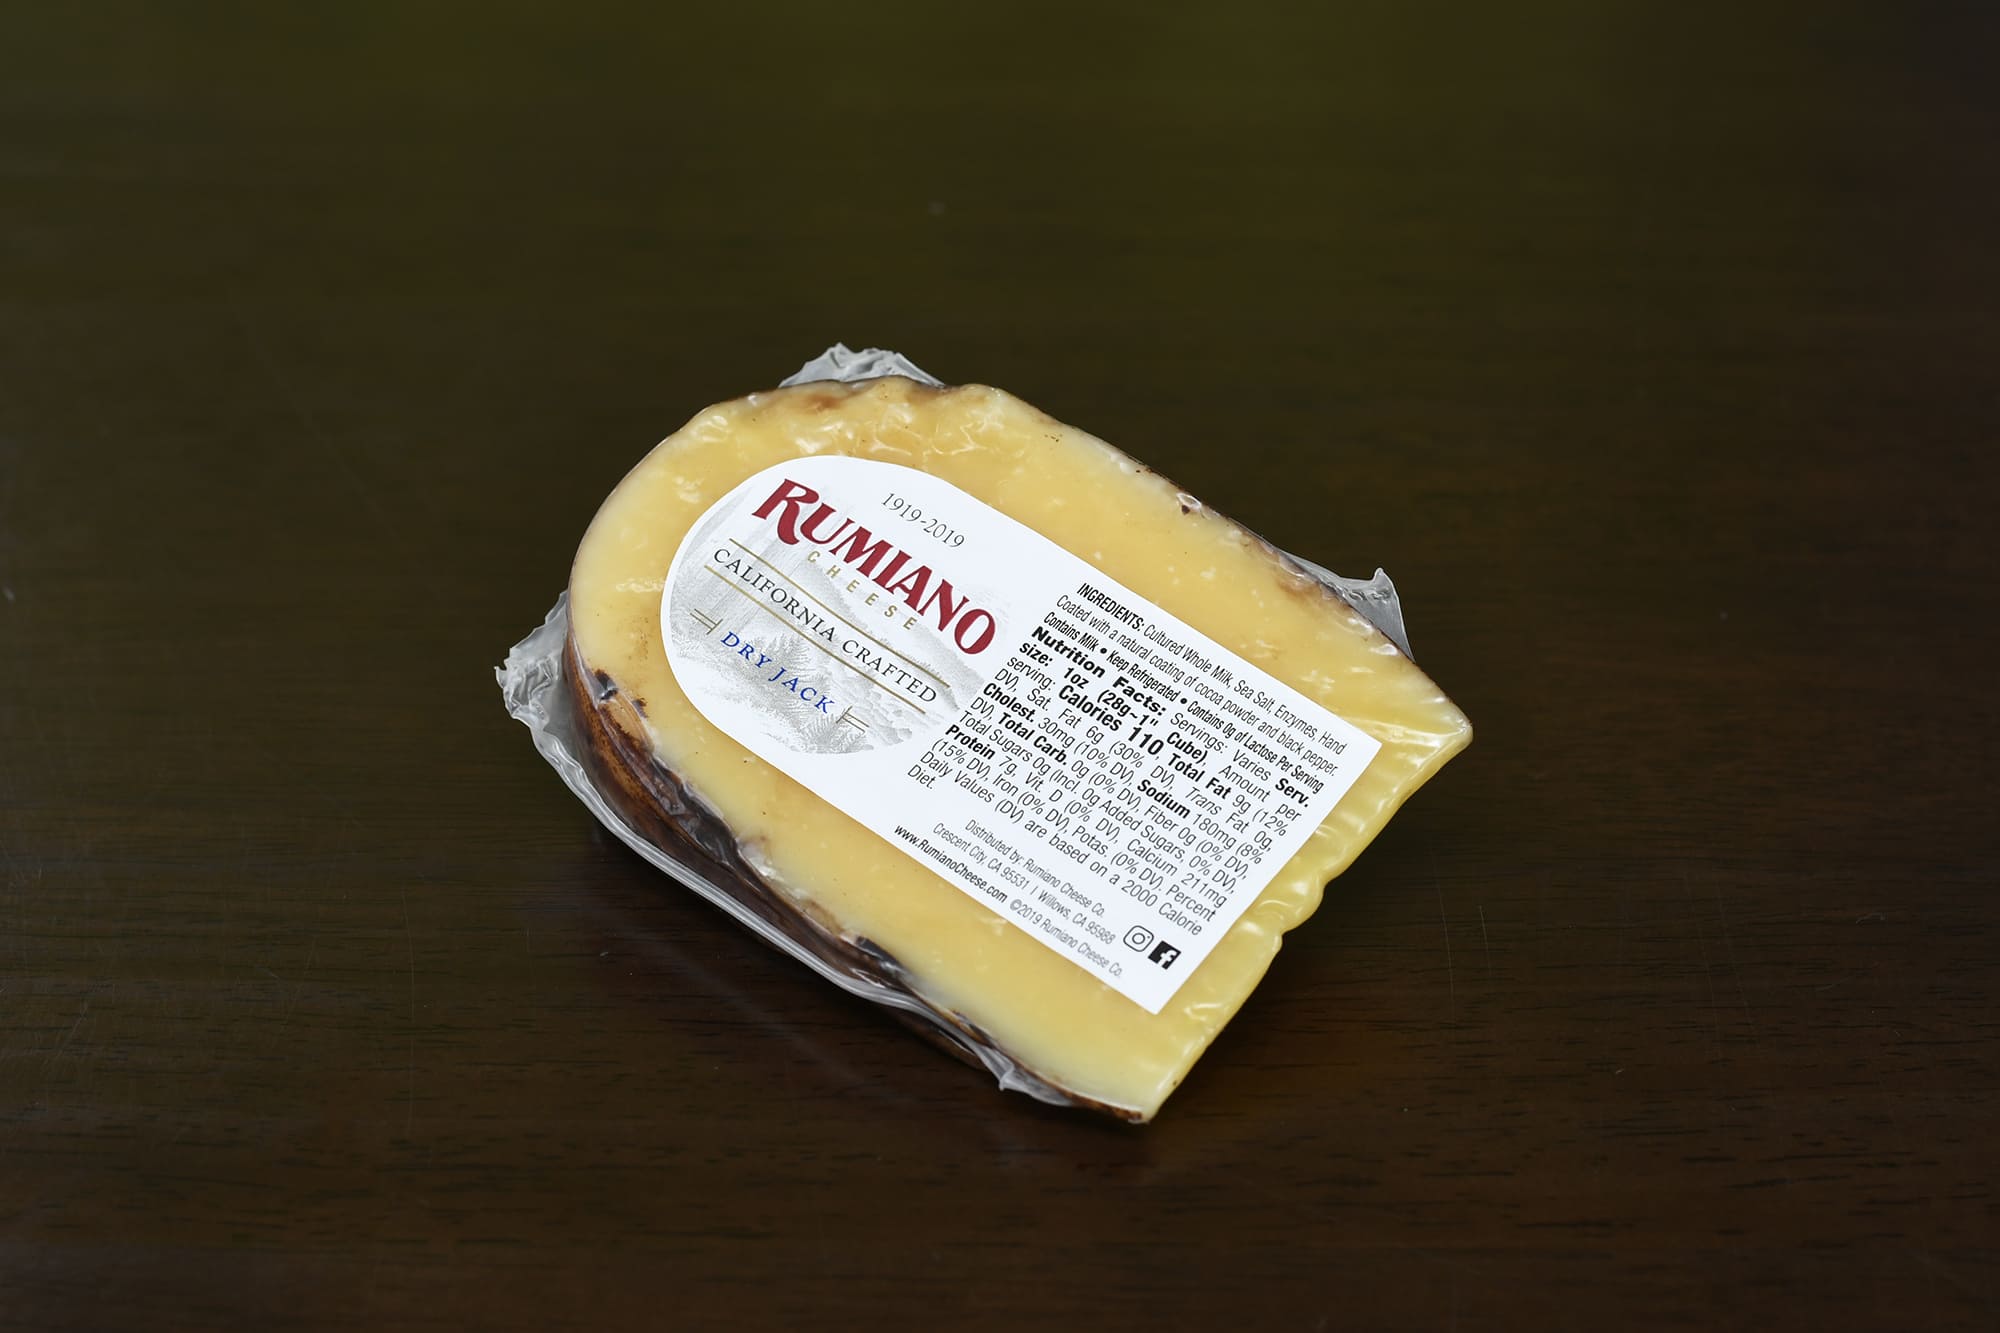 創業100年のルミアーノ・チーズ社が作るハードチーズ。陸前高田市産の塩が使われている。